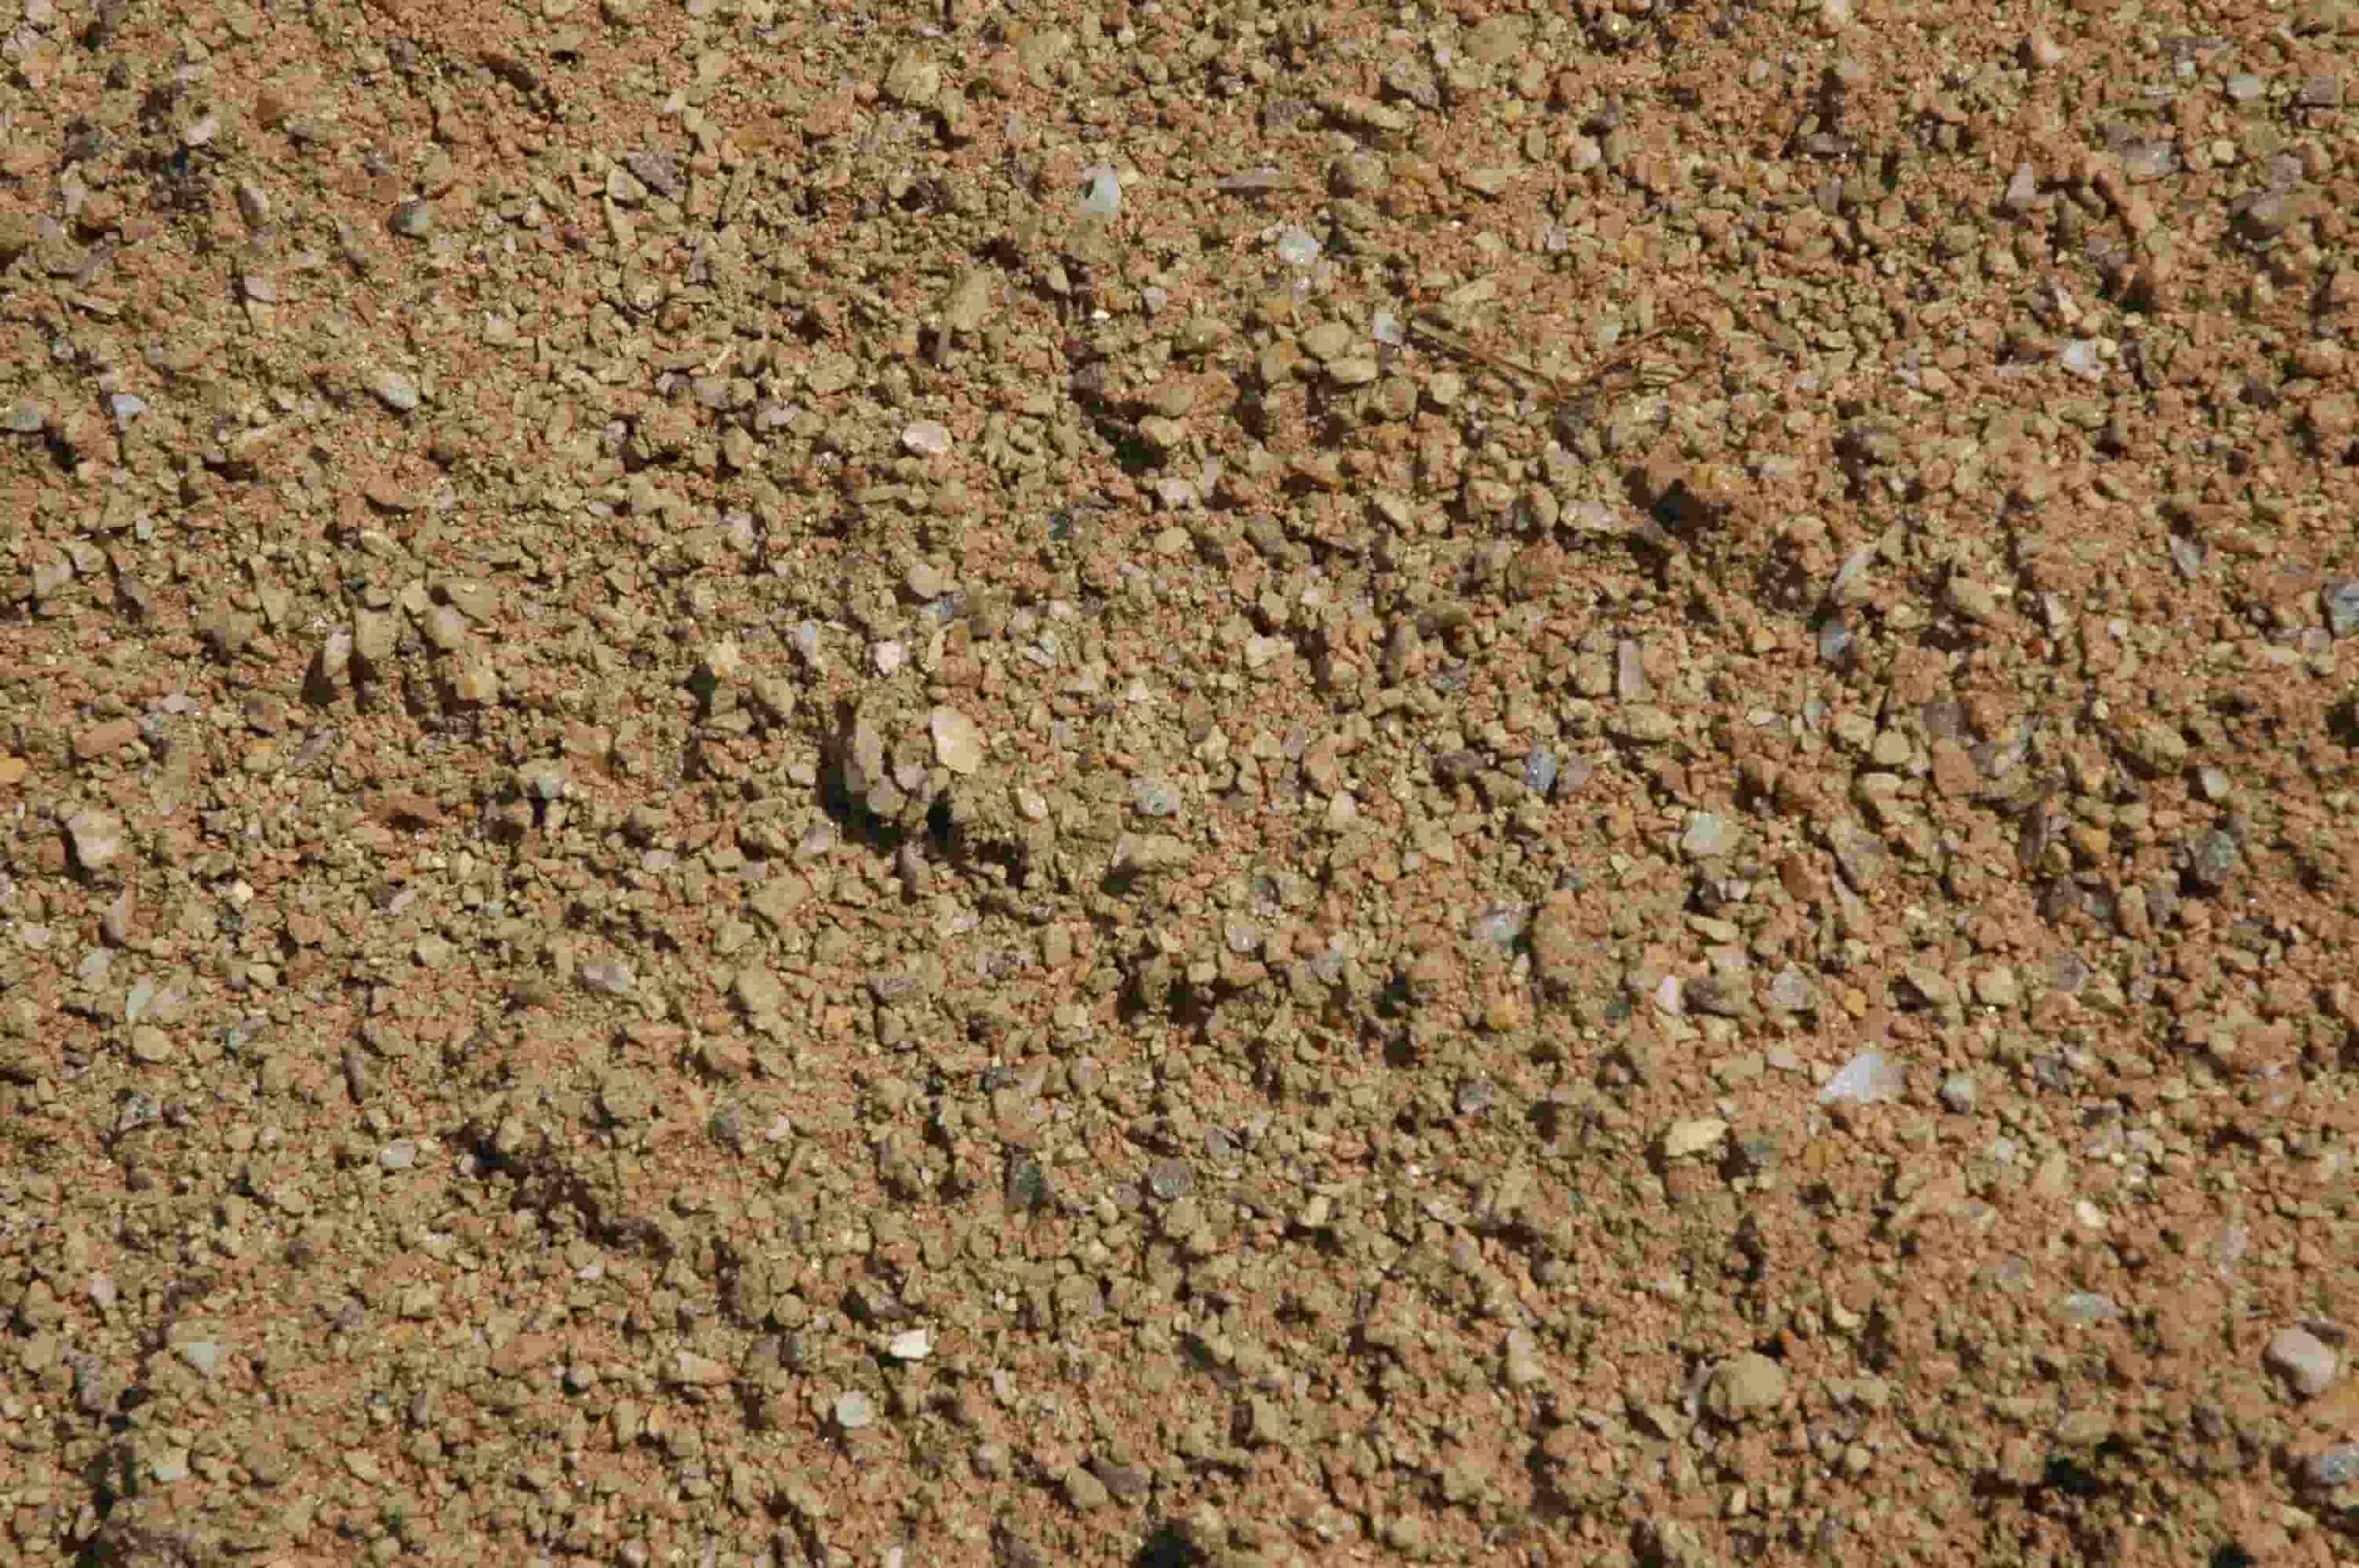 Decomposed Granite